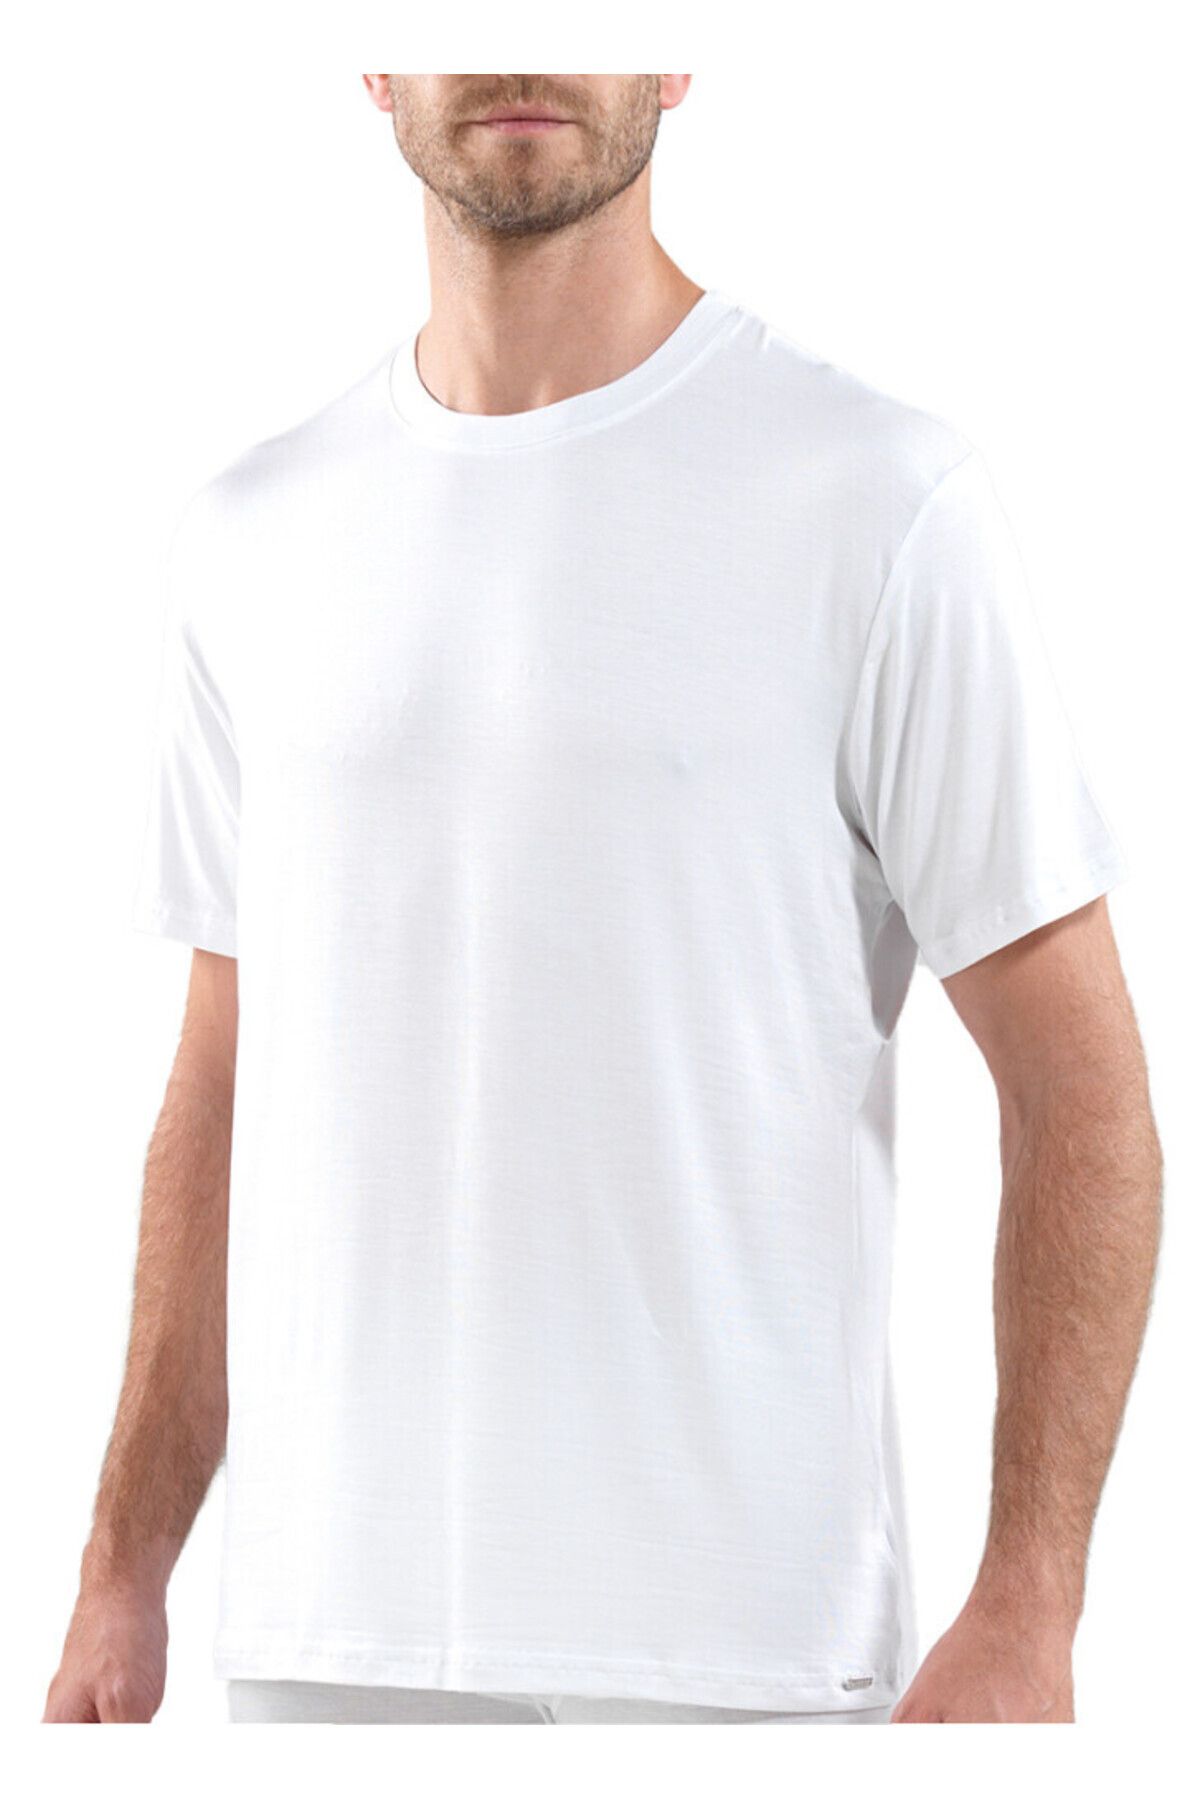 Blackspade Erkek Silver Kısa Kol Beyaz T-shirt 9306